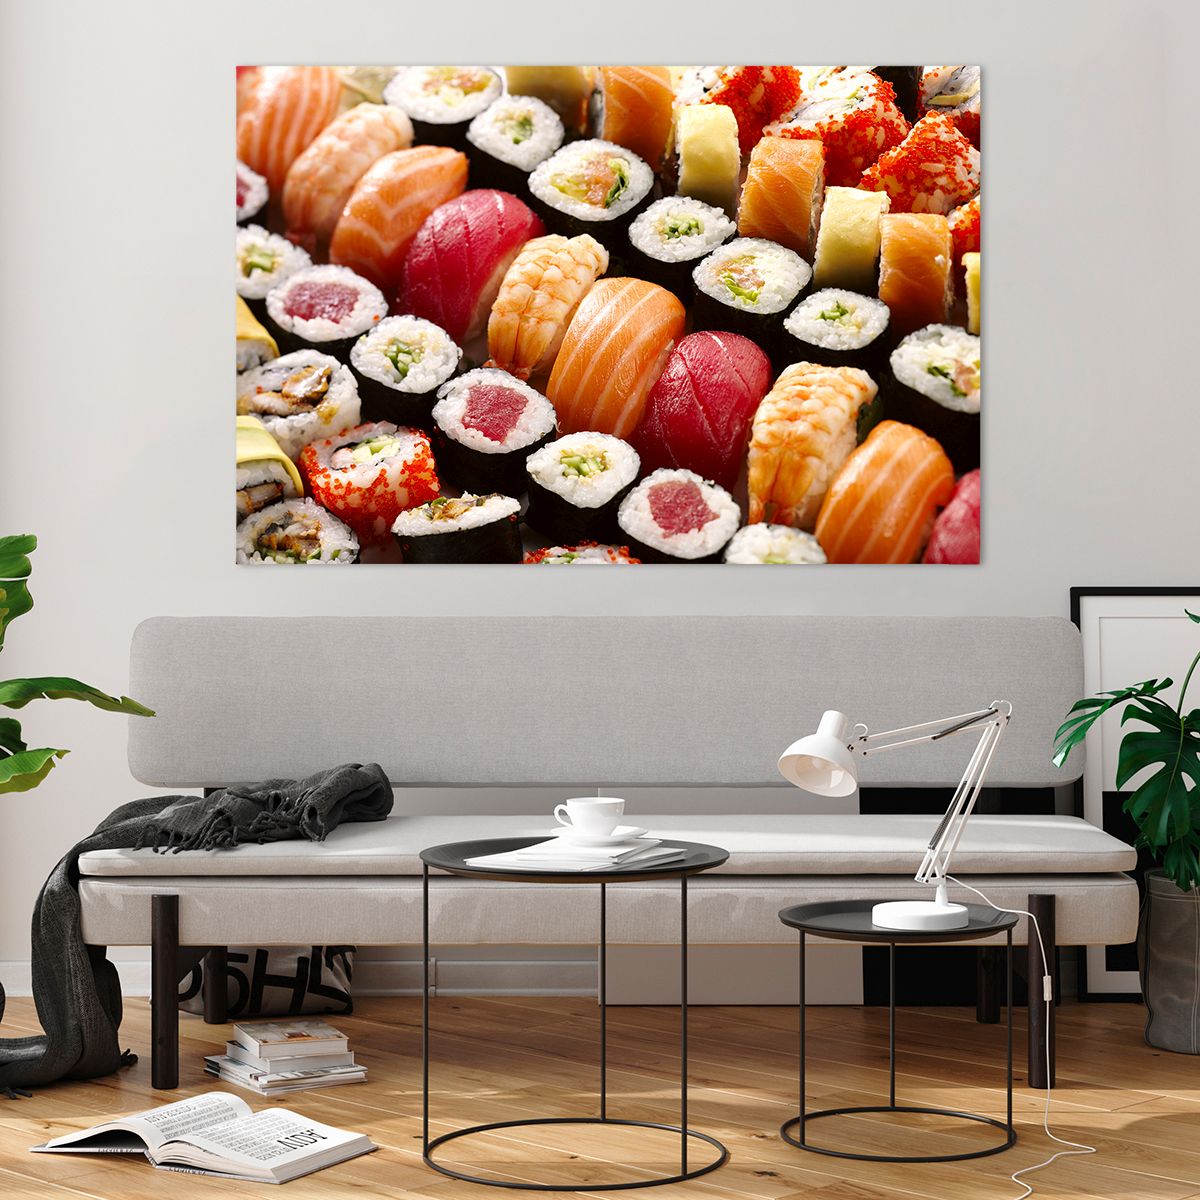 Bilder auf glas Gastronomie, Bilder auf glas Sushi, Bilder auf glas Asien, Bilder auf glas Japan, Bilder auf glas Sashimi